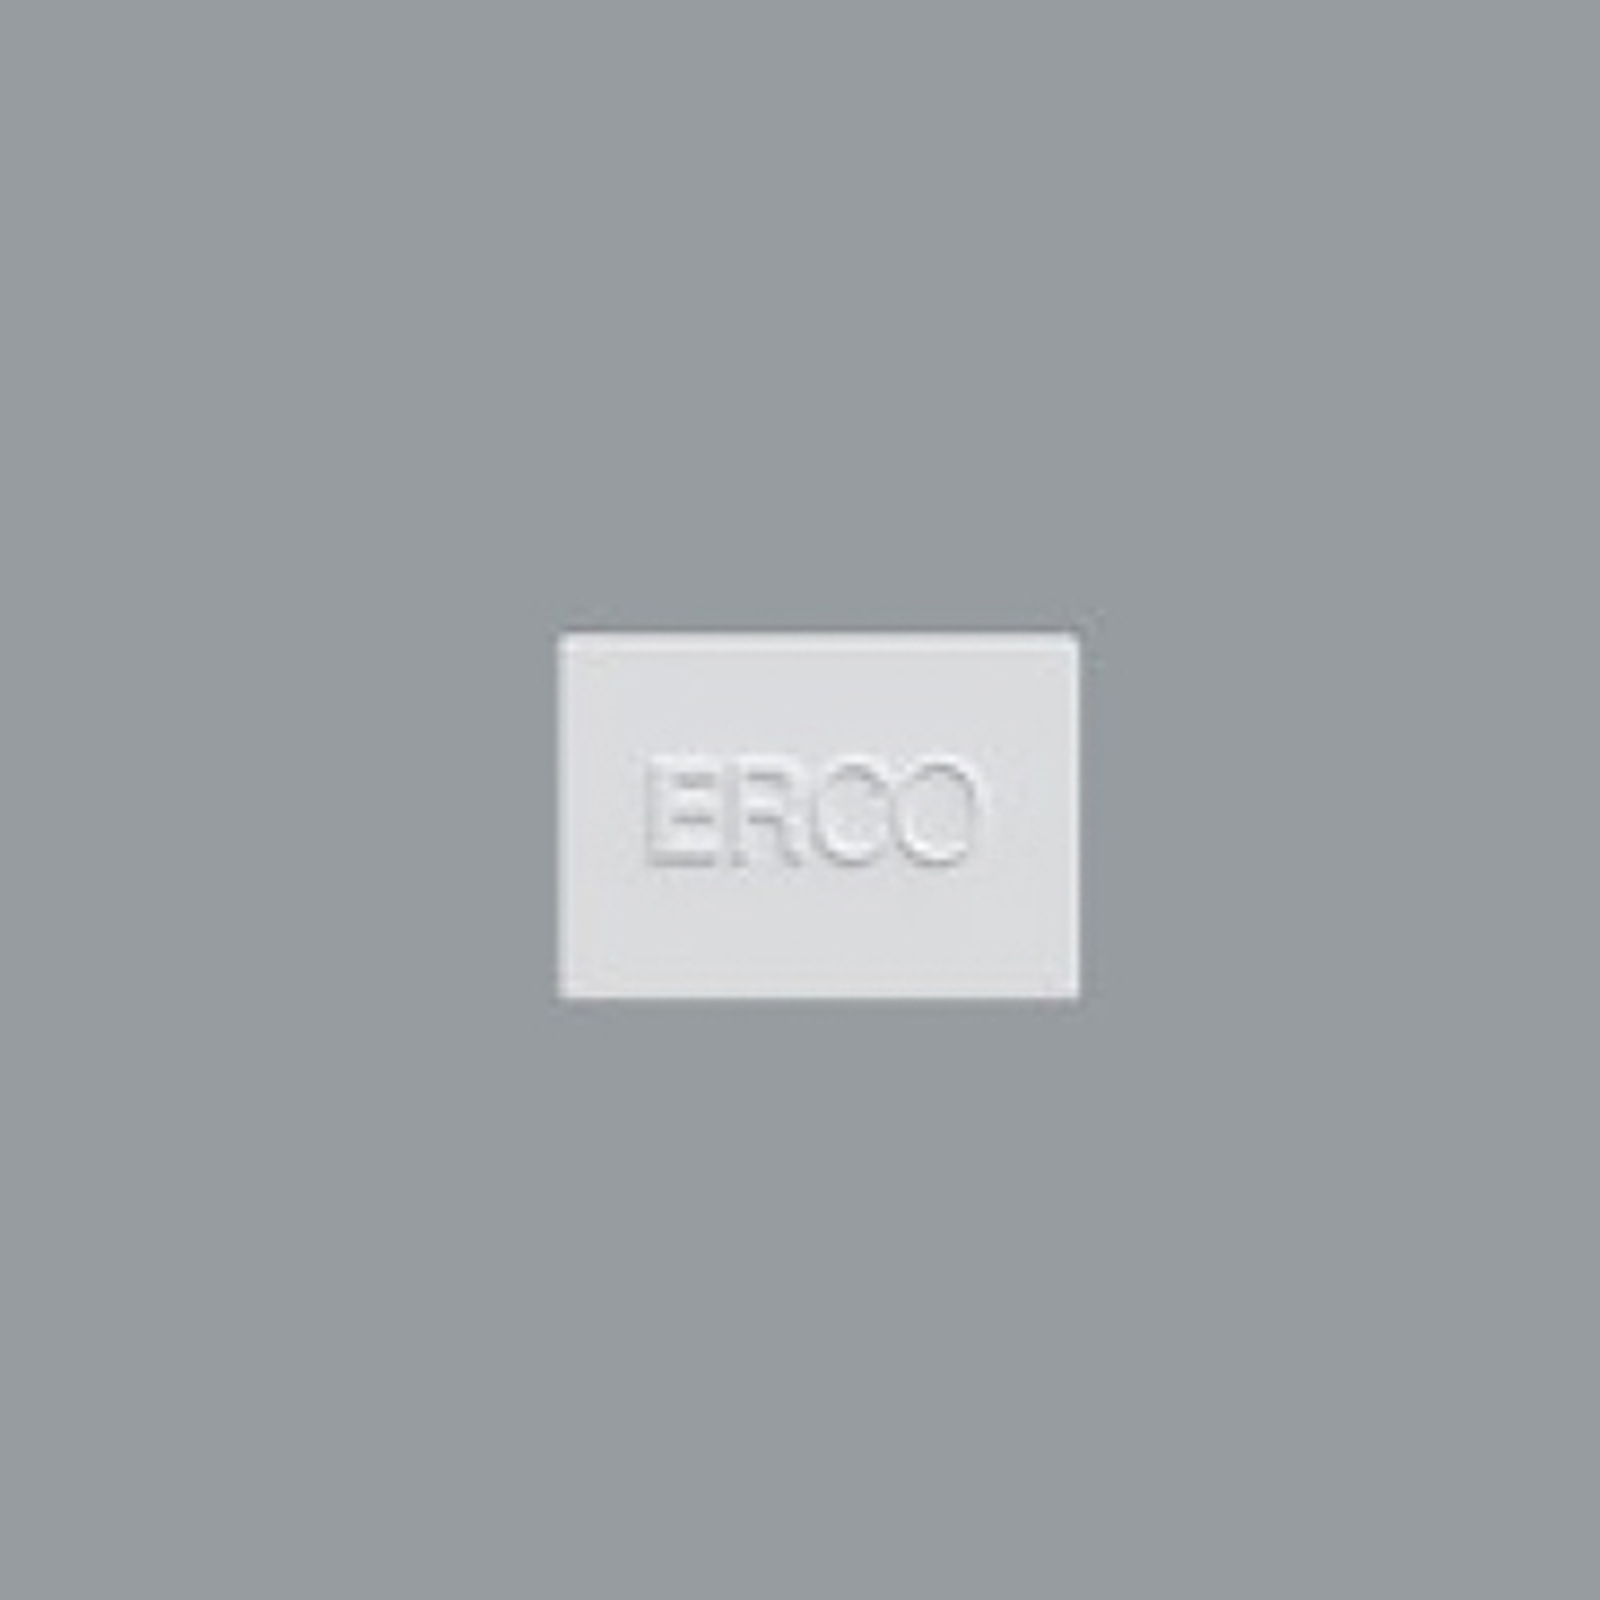 ERCO placa final para riel Minirail, blanco